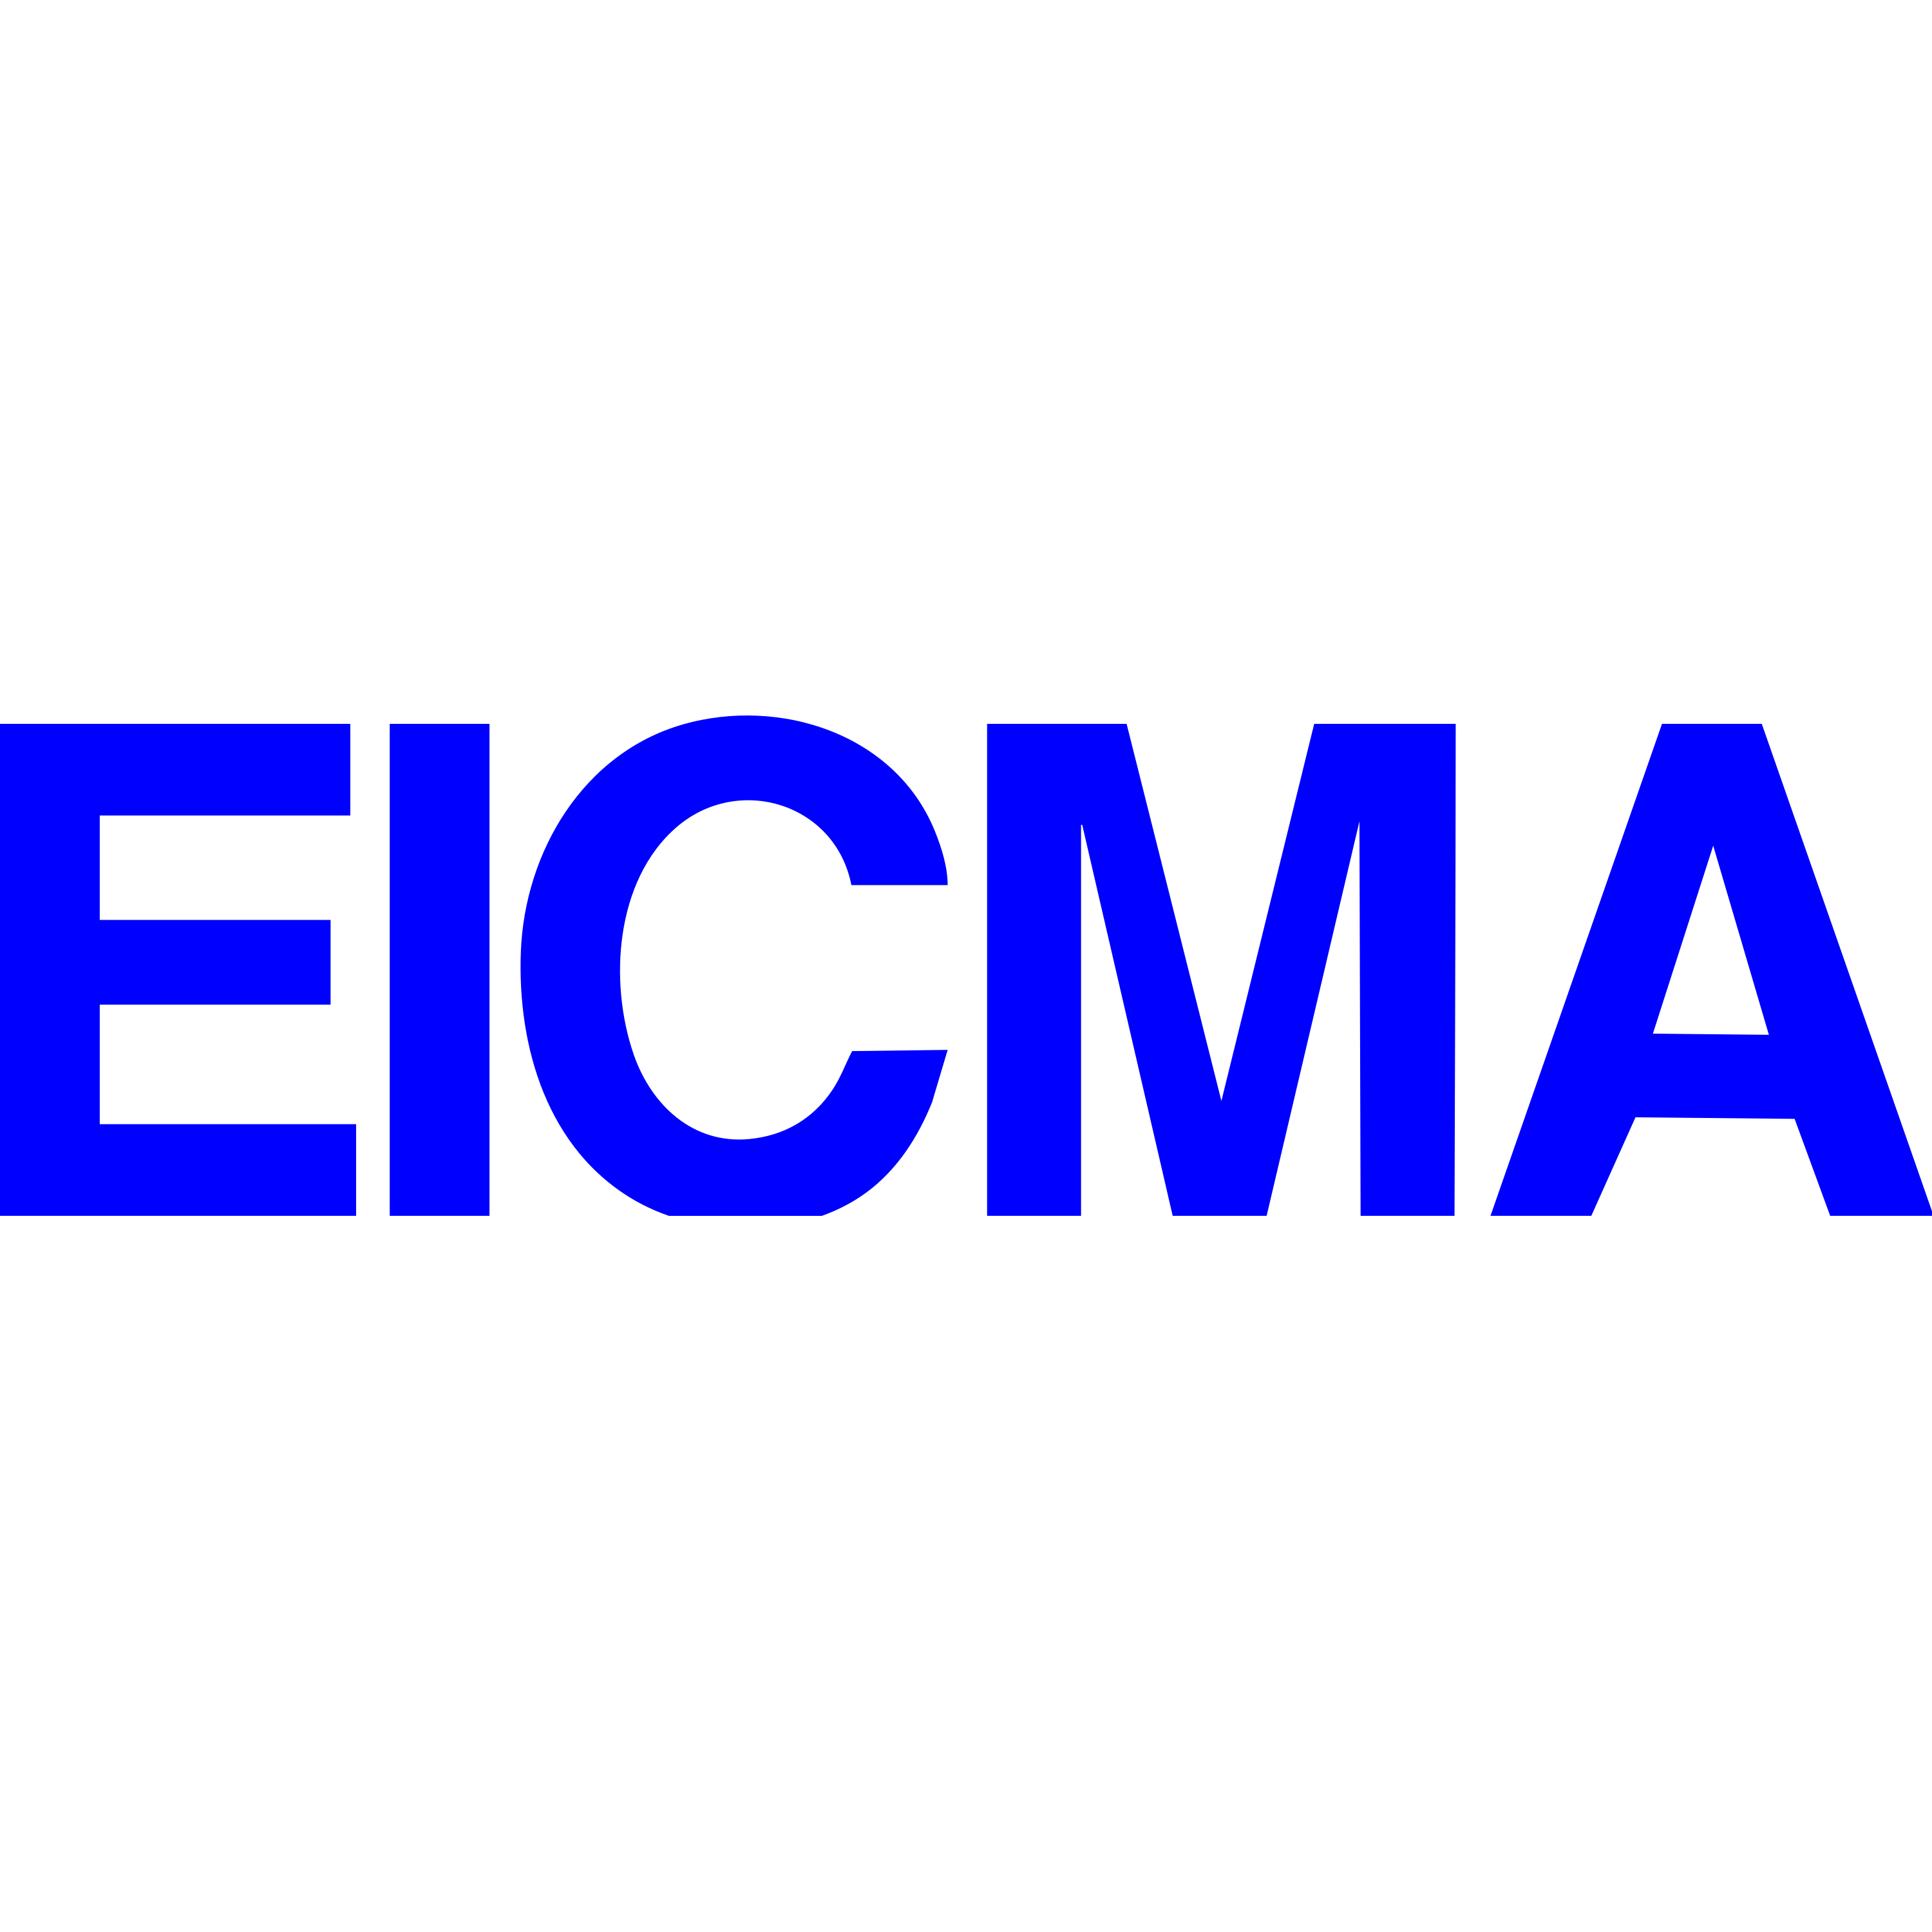 EICMA Logo Transparent Picture